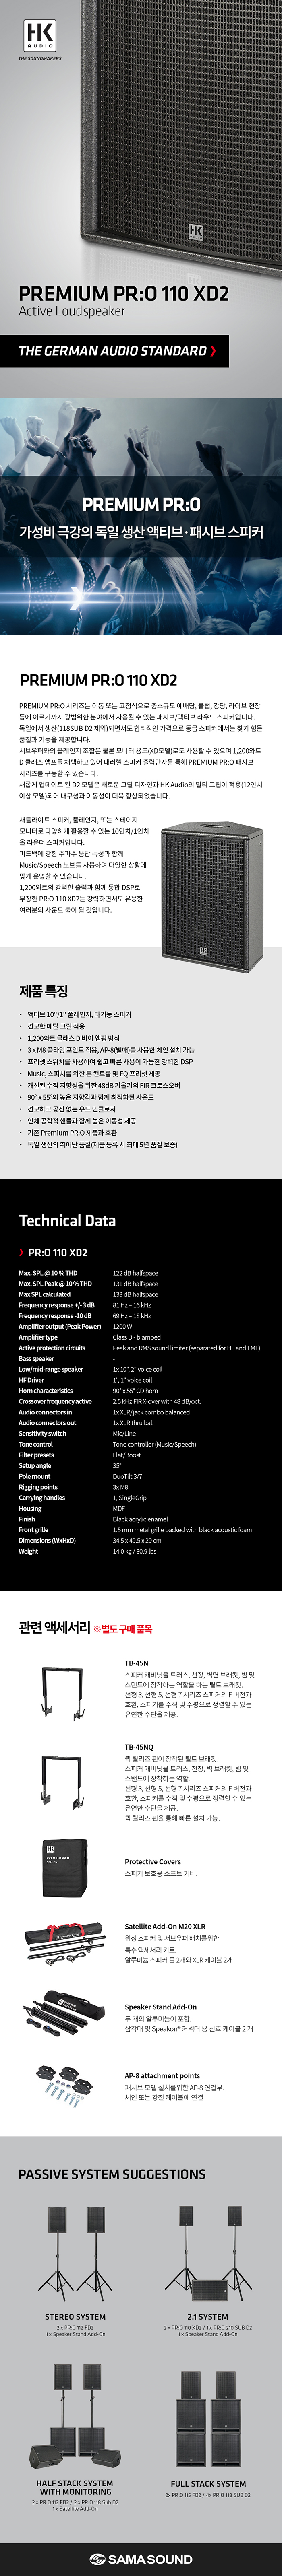 HK Audio Pro 110 XD2